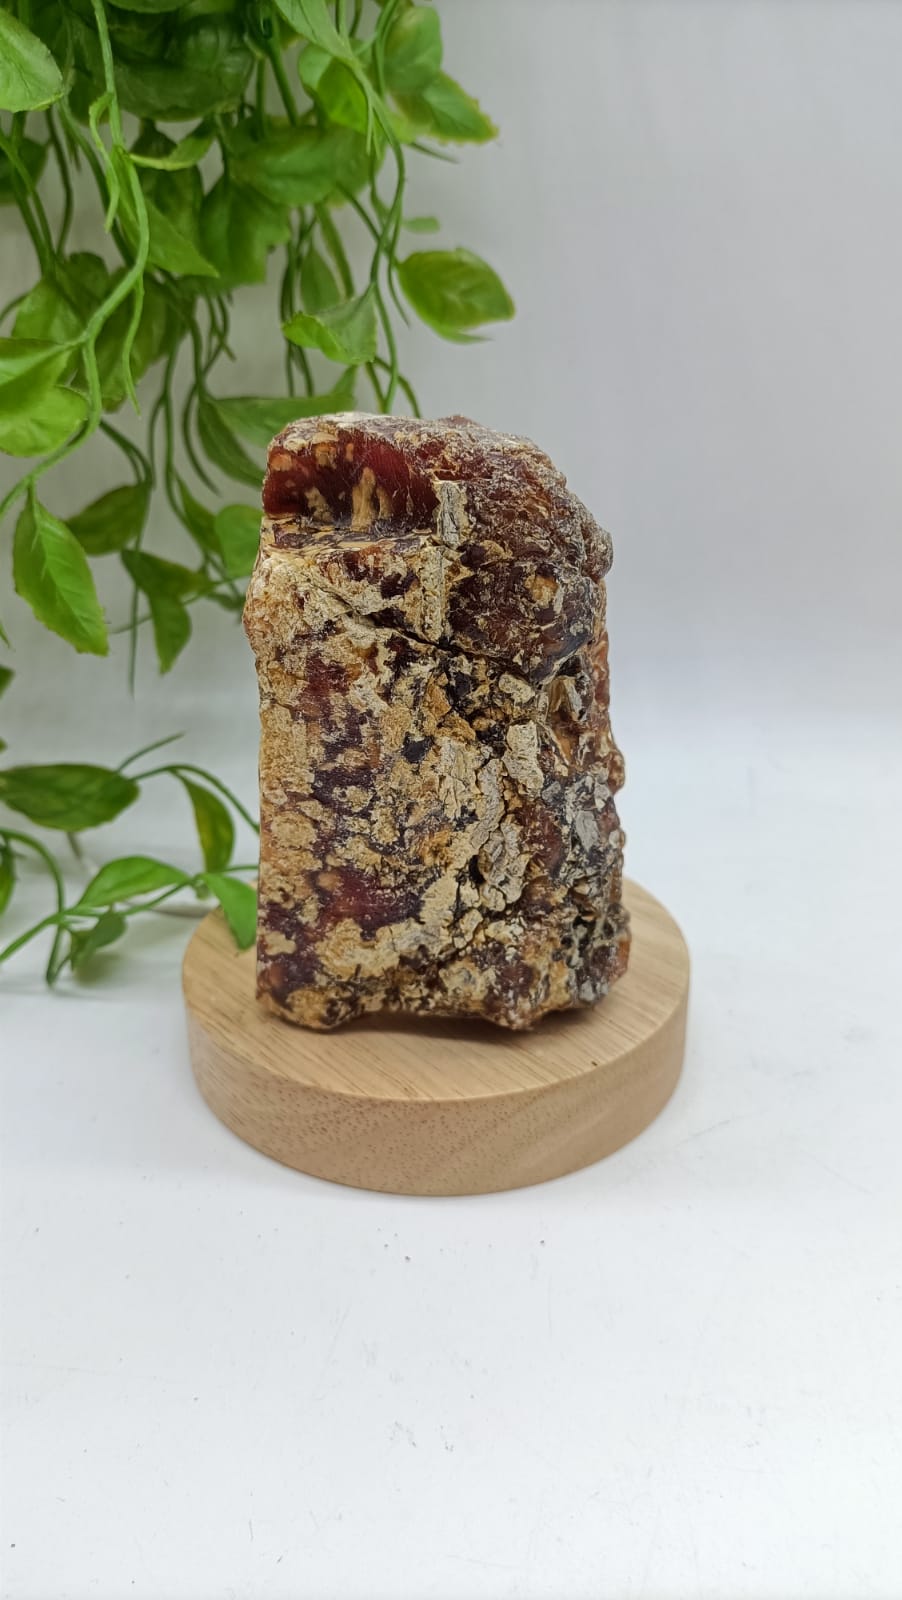 Rare Sumatra Raw Amber 161g 10x7x4cm

